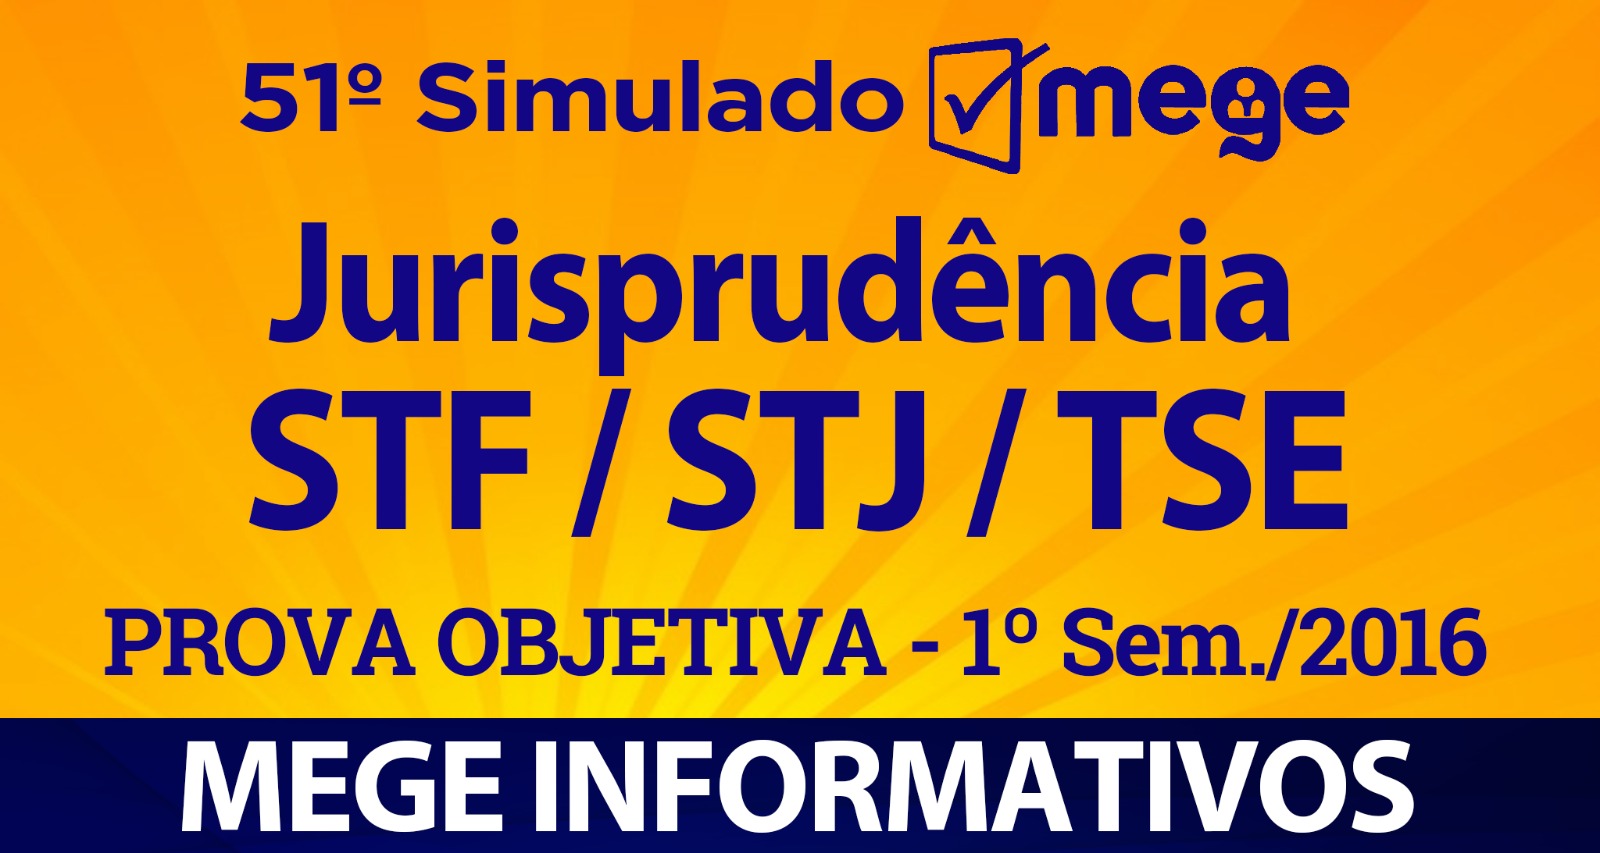 51º Simulado Mege (Jurisprudência, STF/STJ/TSE - 1º Semestre/2016)